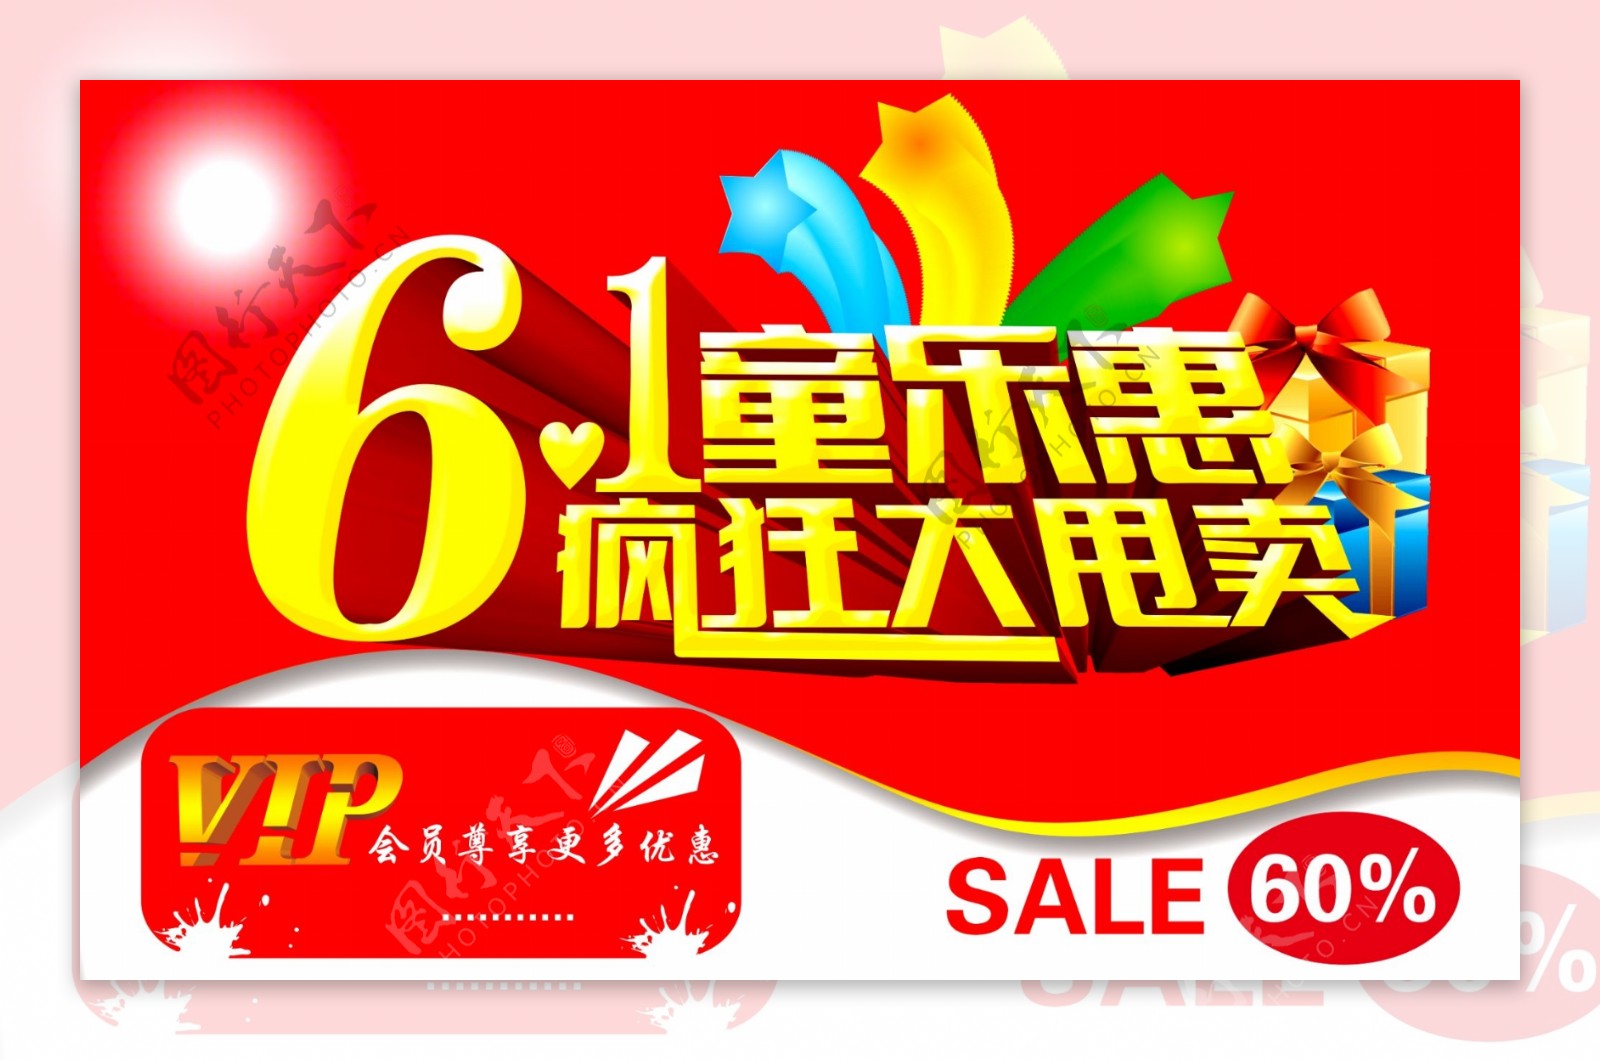 61童乐惠商场促销海报设计PSD源文件